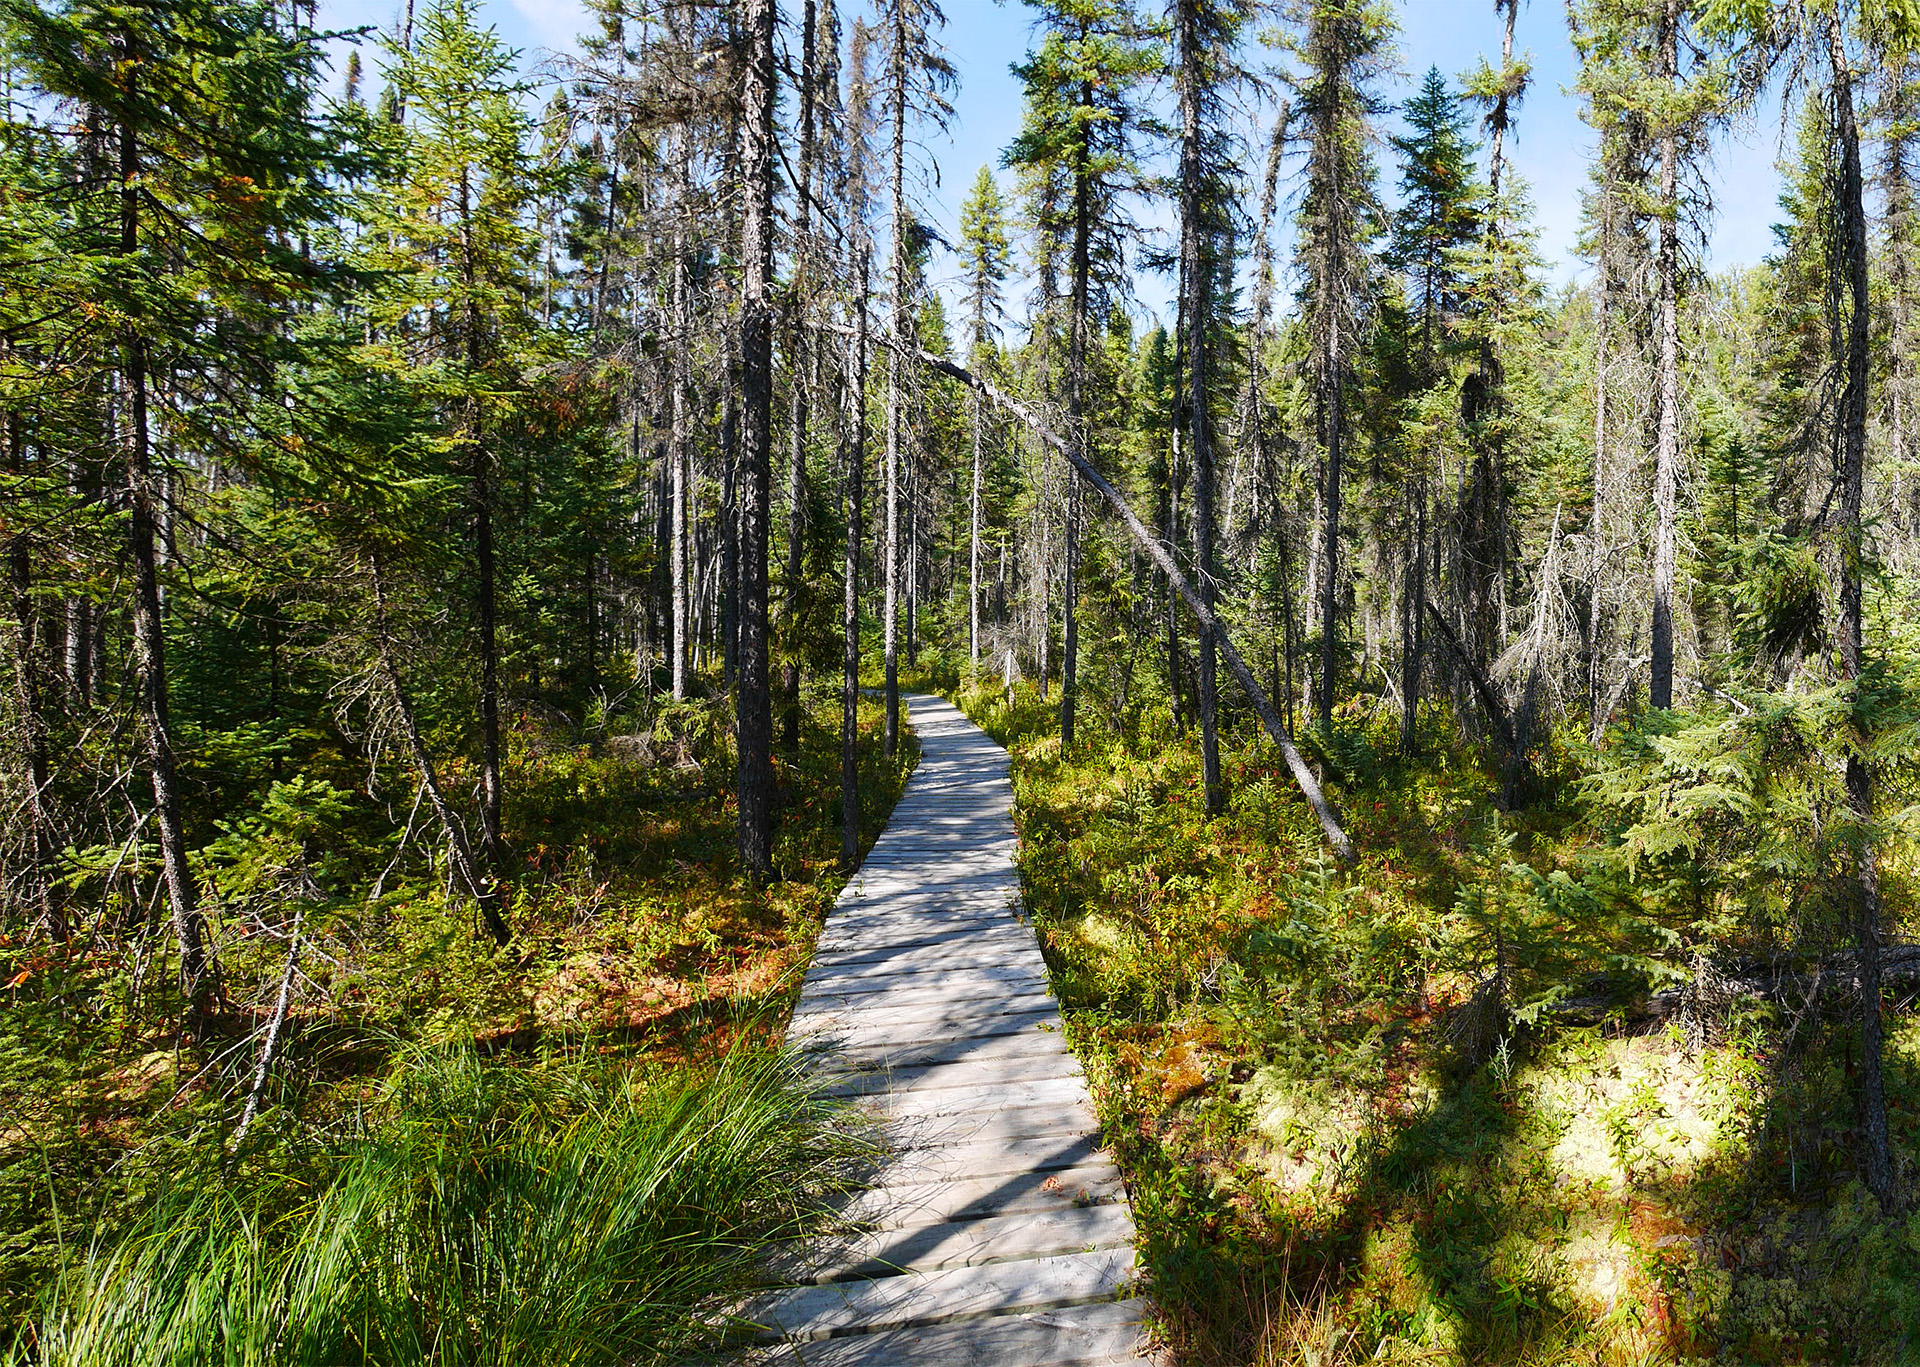 boardwalk trail through a bog forest of thin spruce trees under a clear blue sky